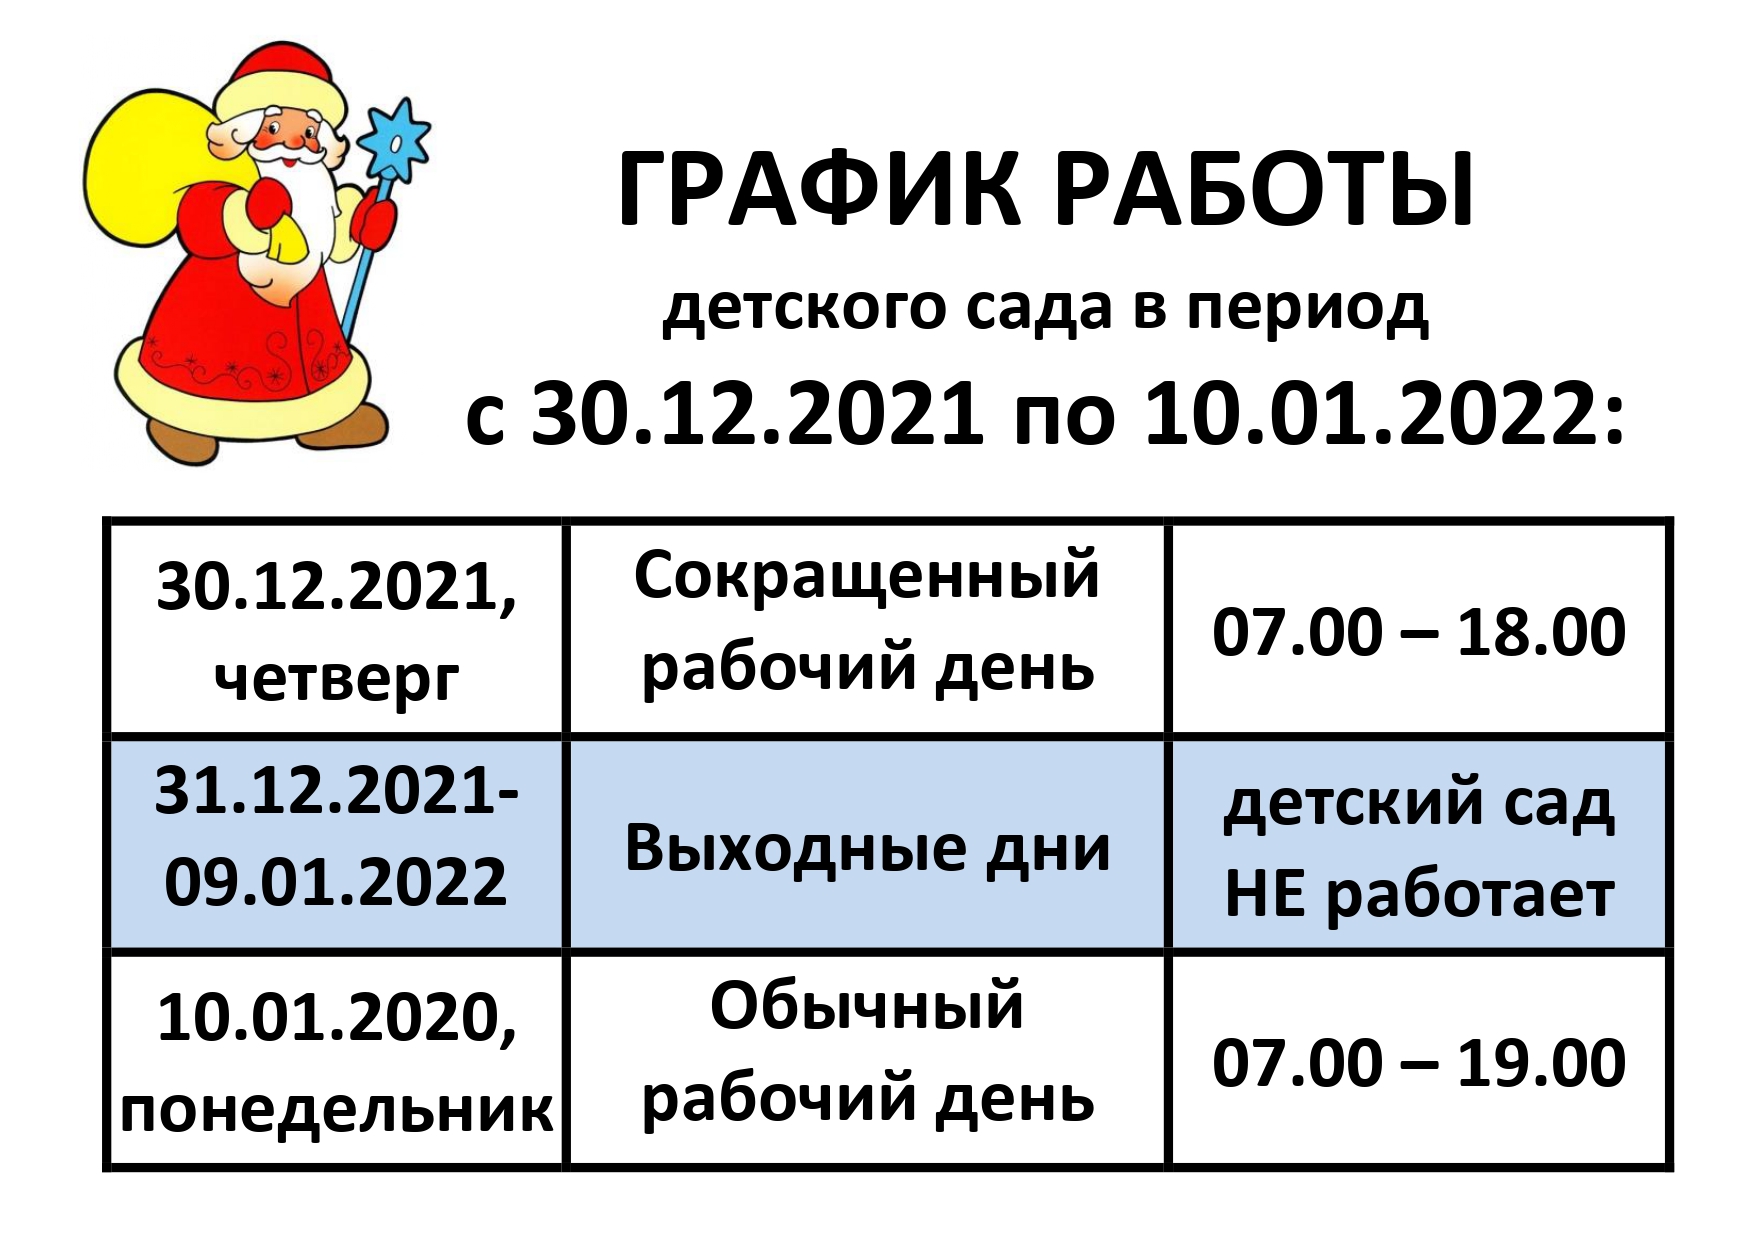 ГРАФИК РАБОТЫ Новый год 2022